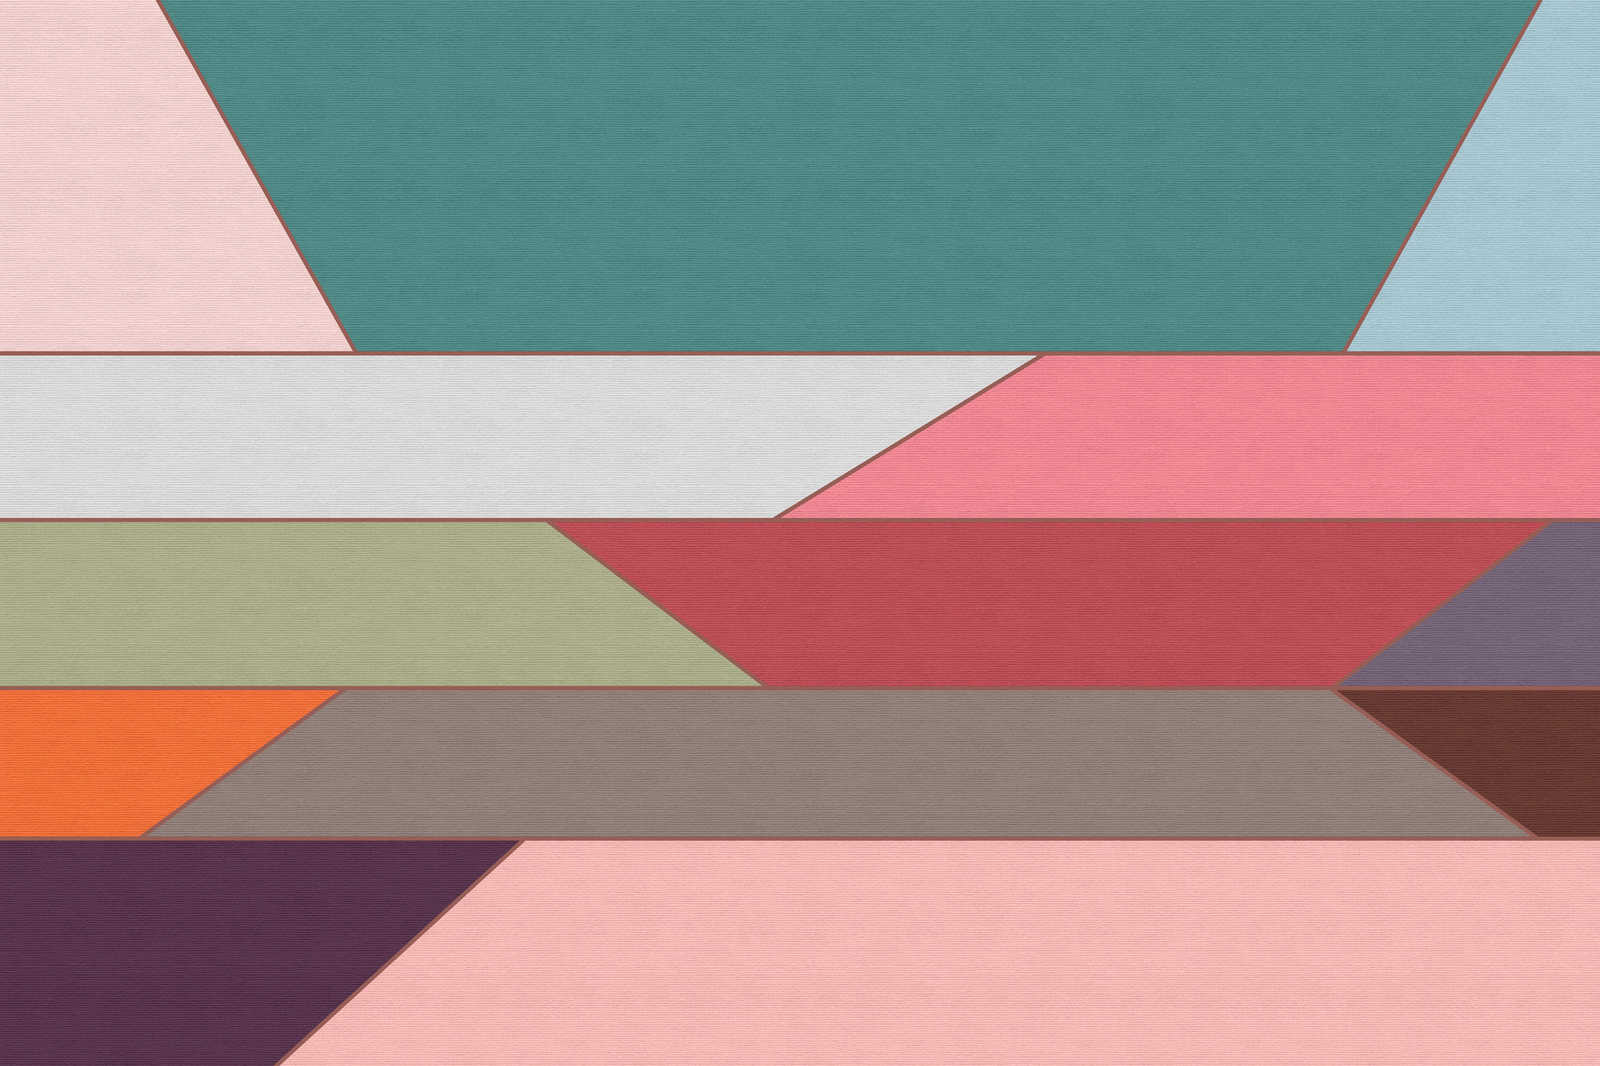             Geometry 2 - Canvas schilderij met kleurrijk horizontaal streeppatroon in ribbelstructuur - 0.90 m x 0.60 m
        